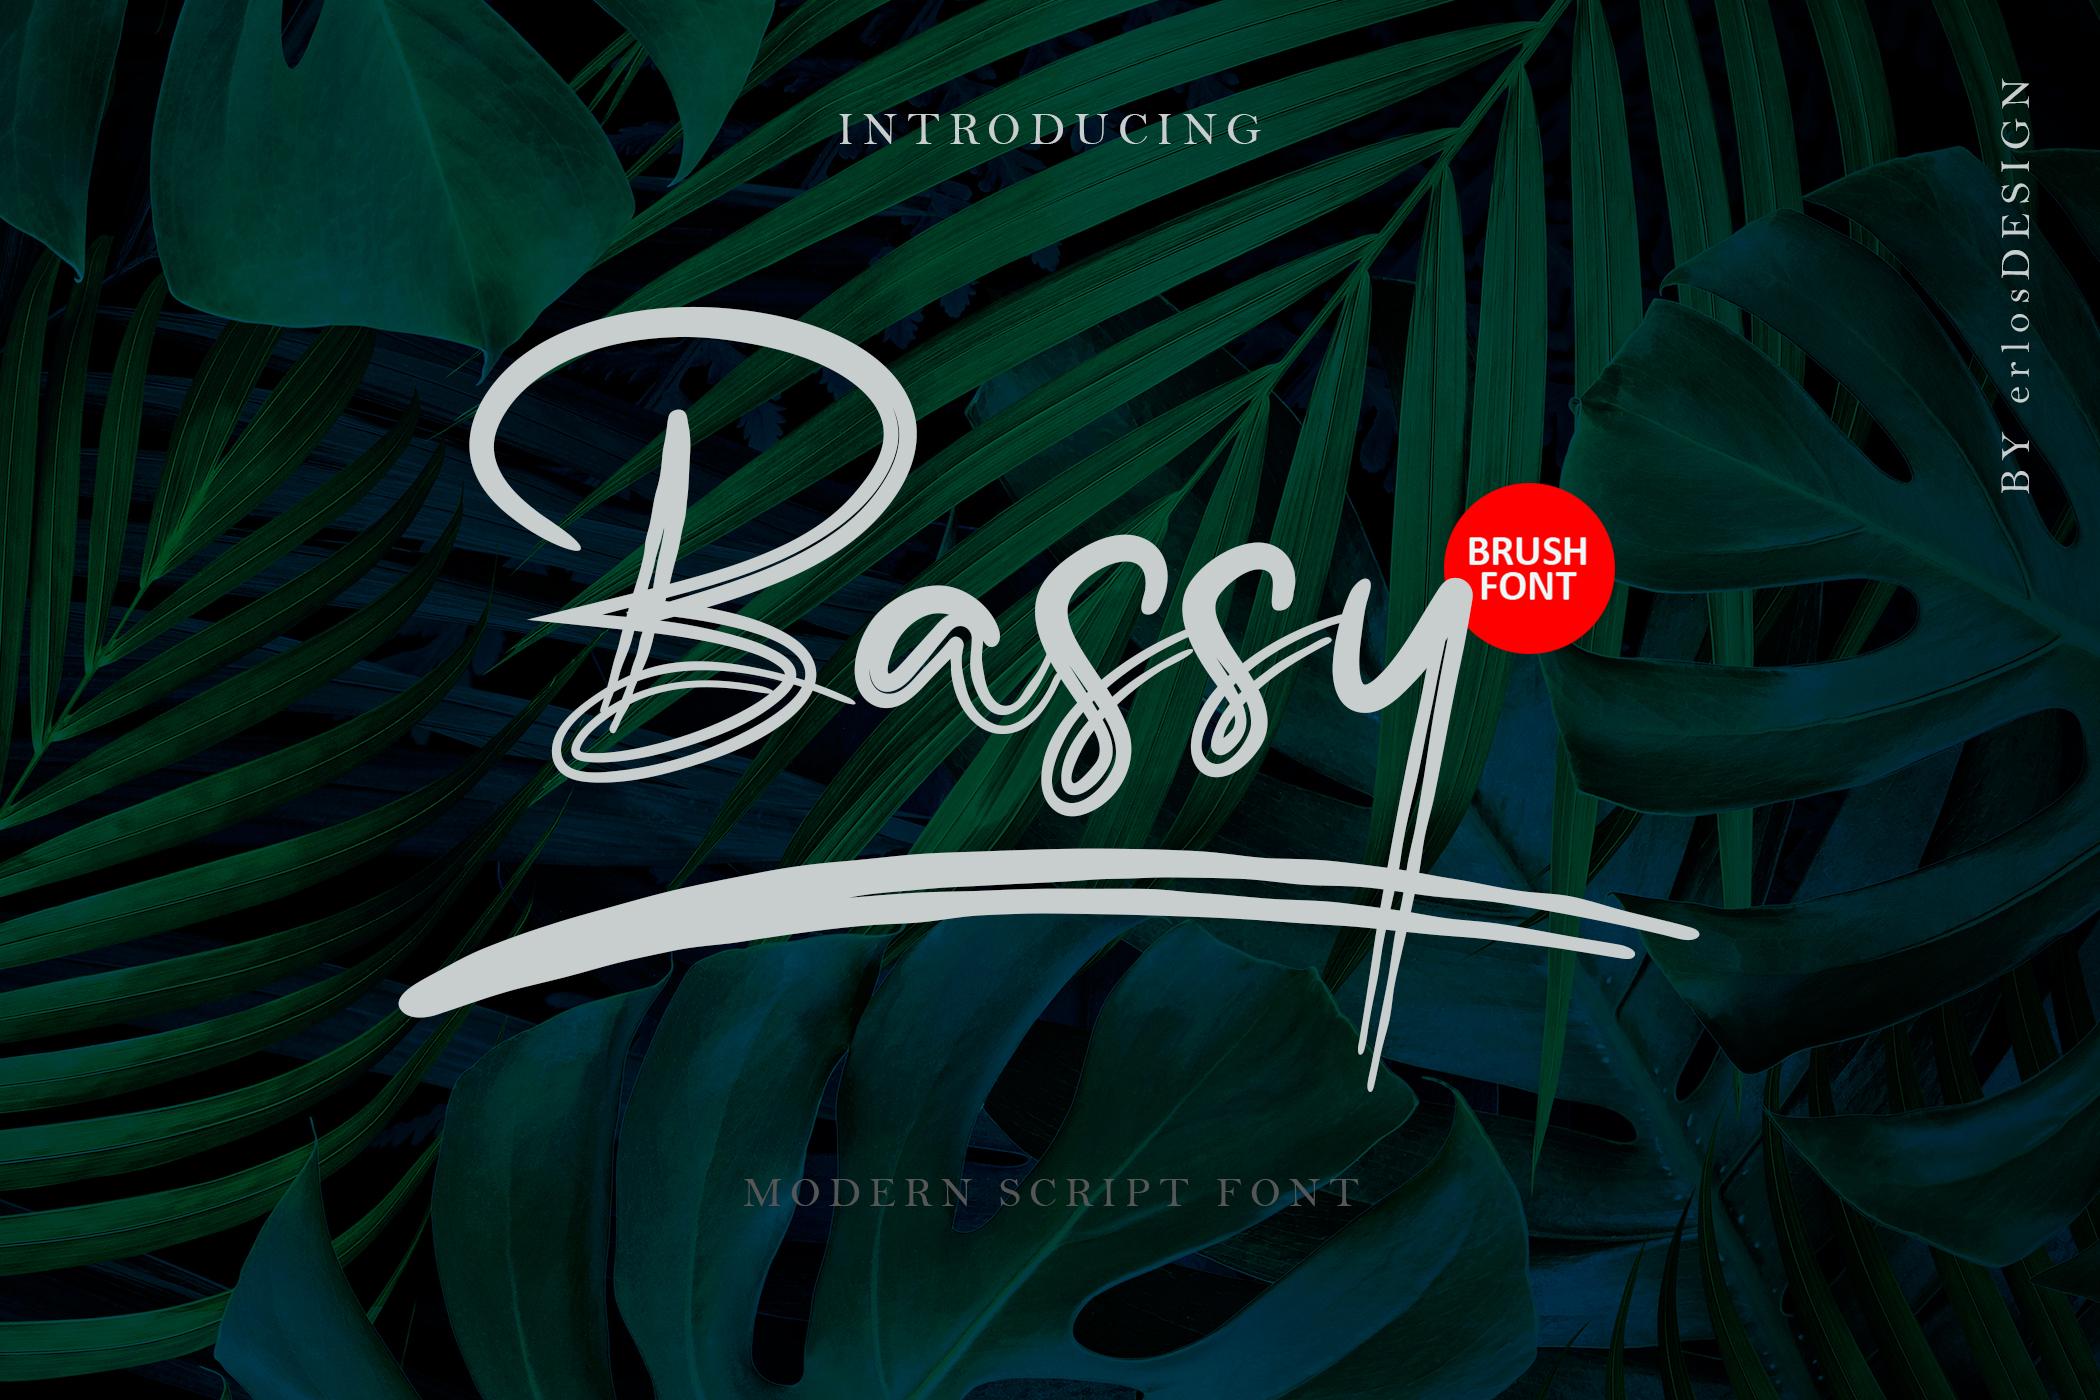 Bassy Font